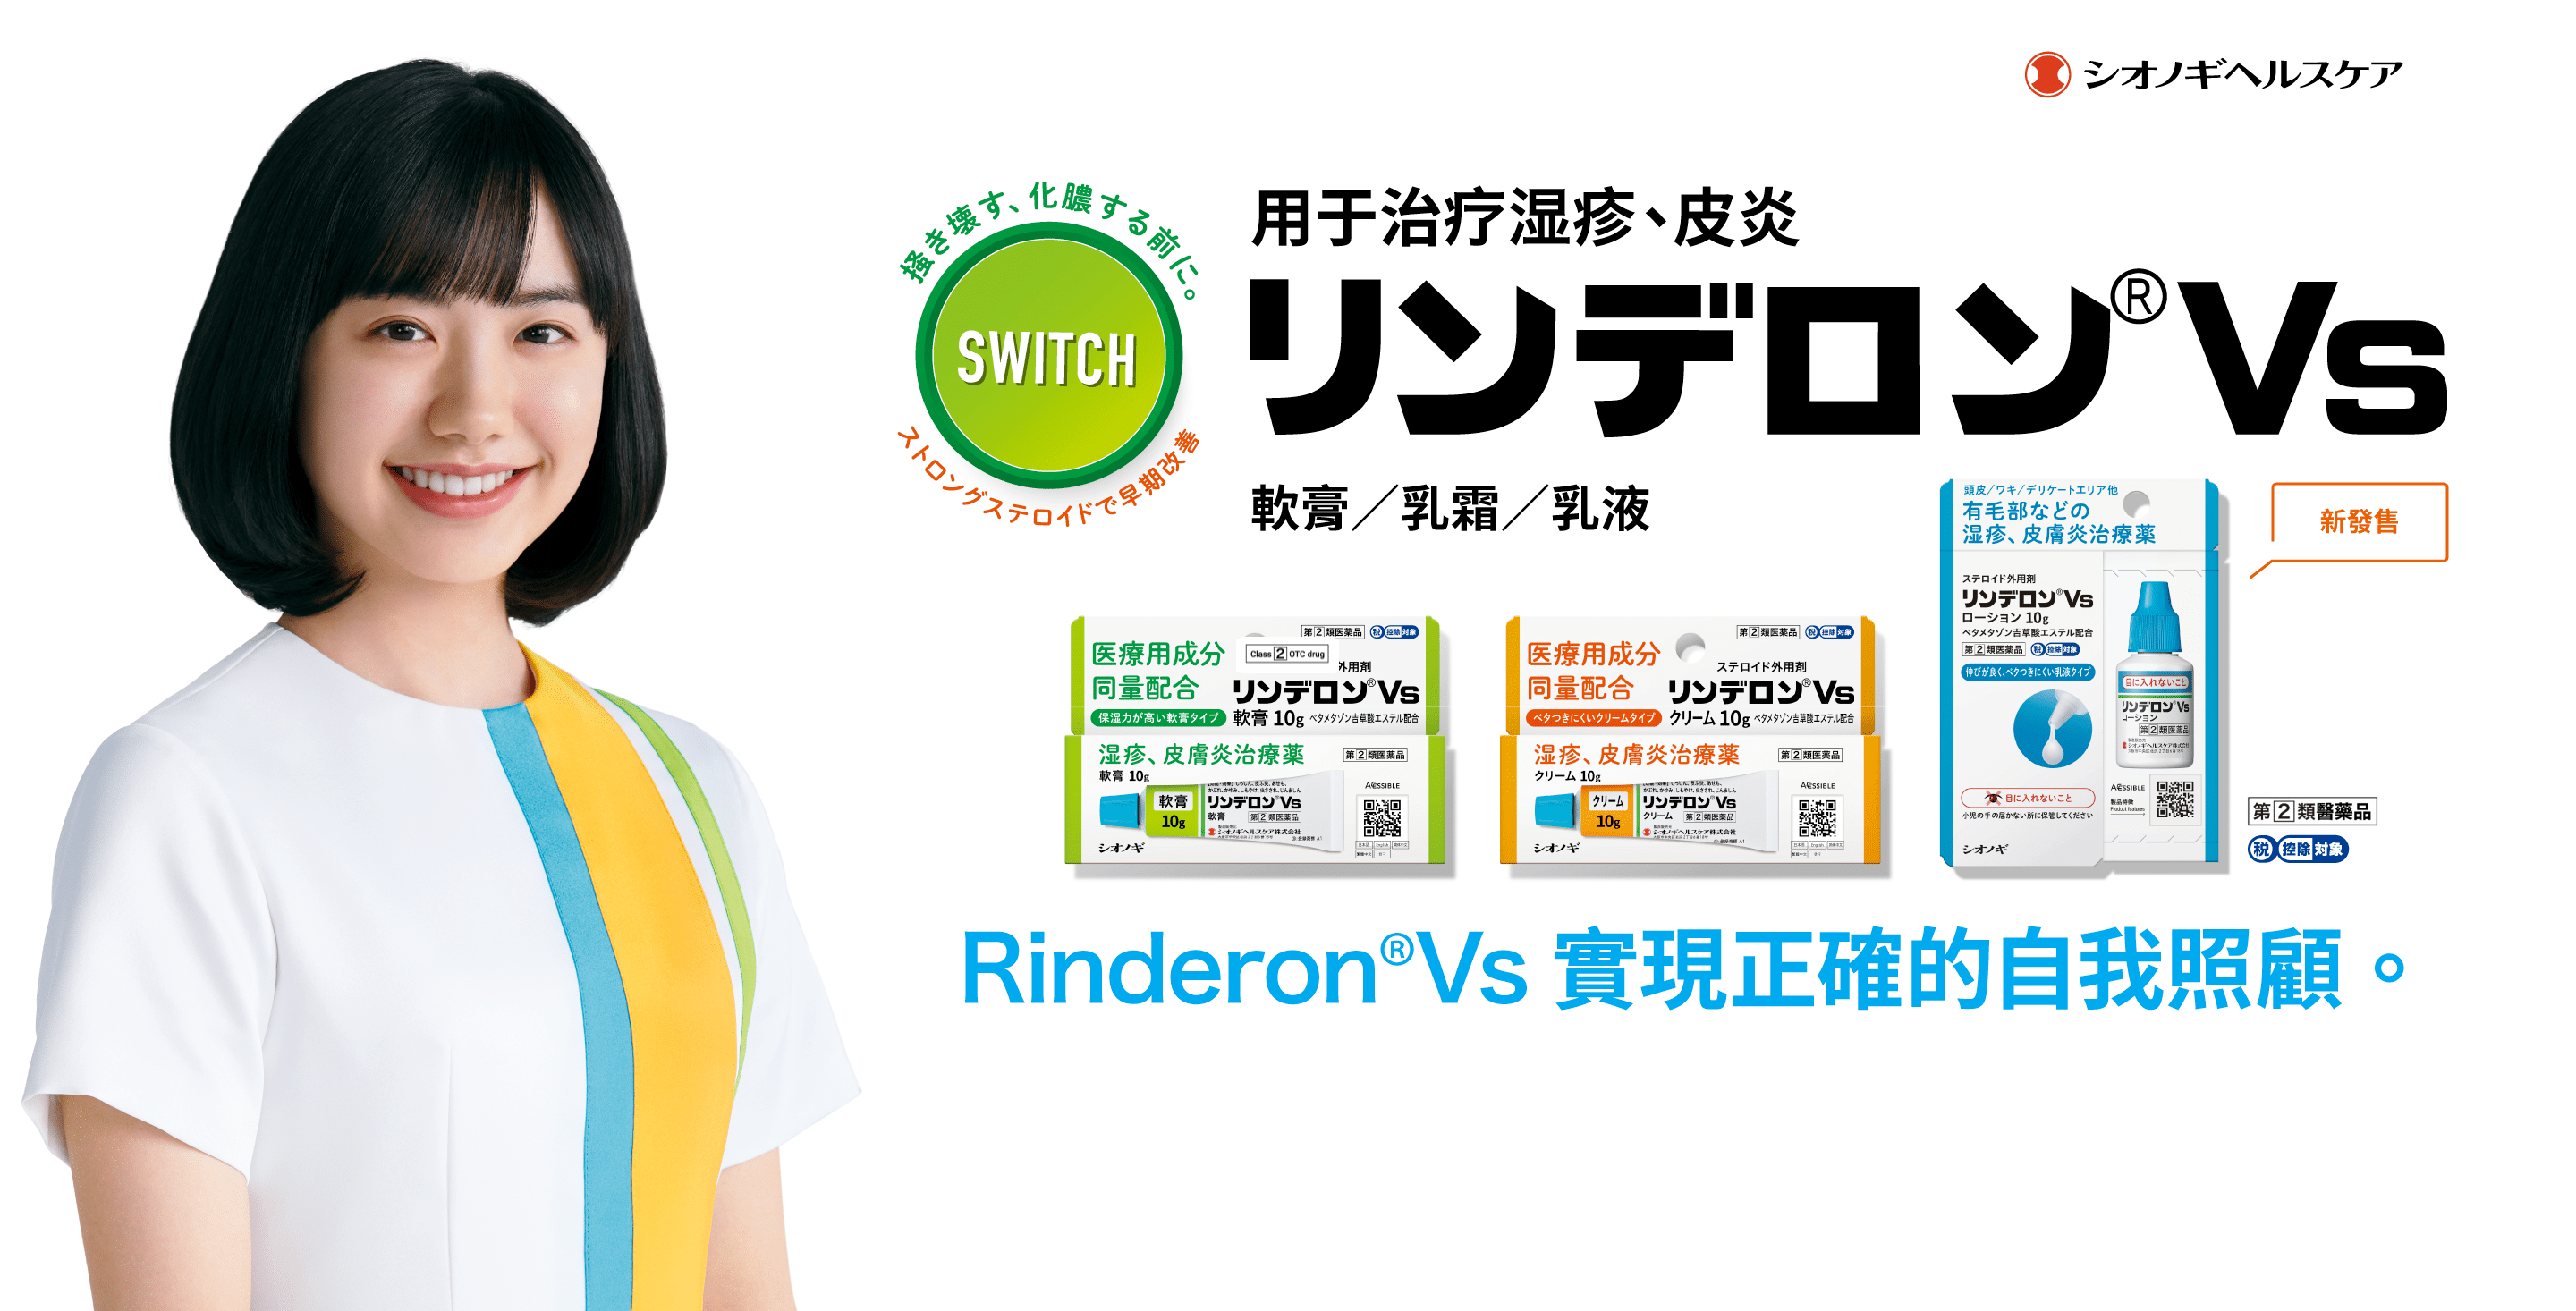 Rinderon®Vs 實現正確的自我照顧。用於濕疹、皮膚炎的治療/成分同醫療用量